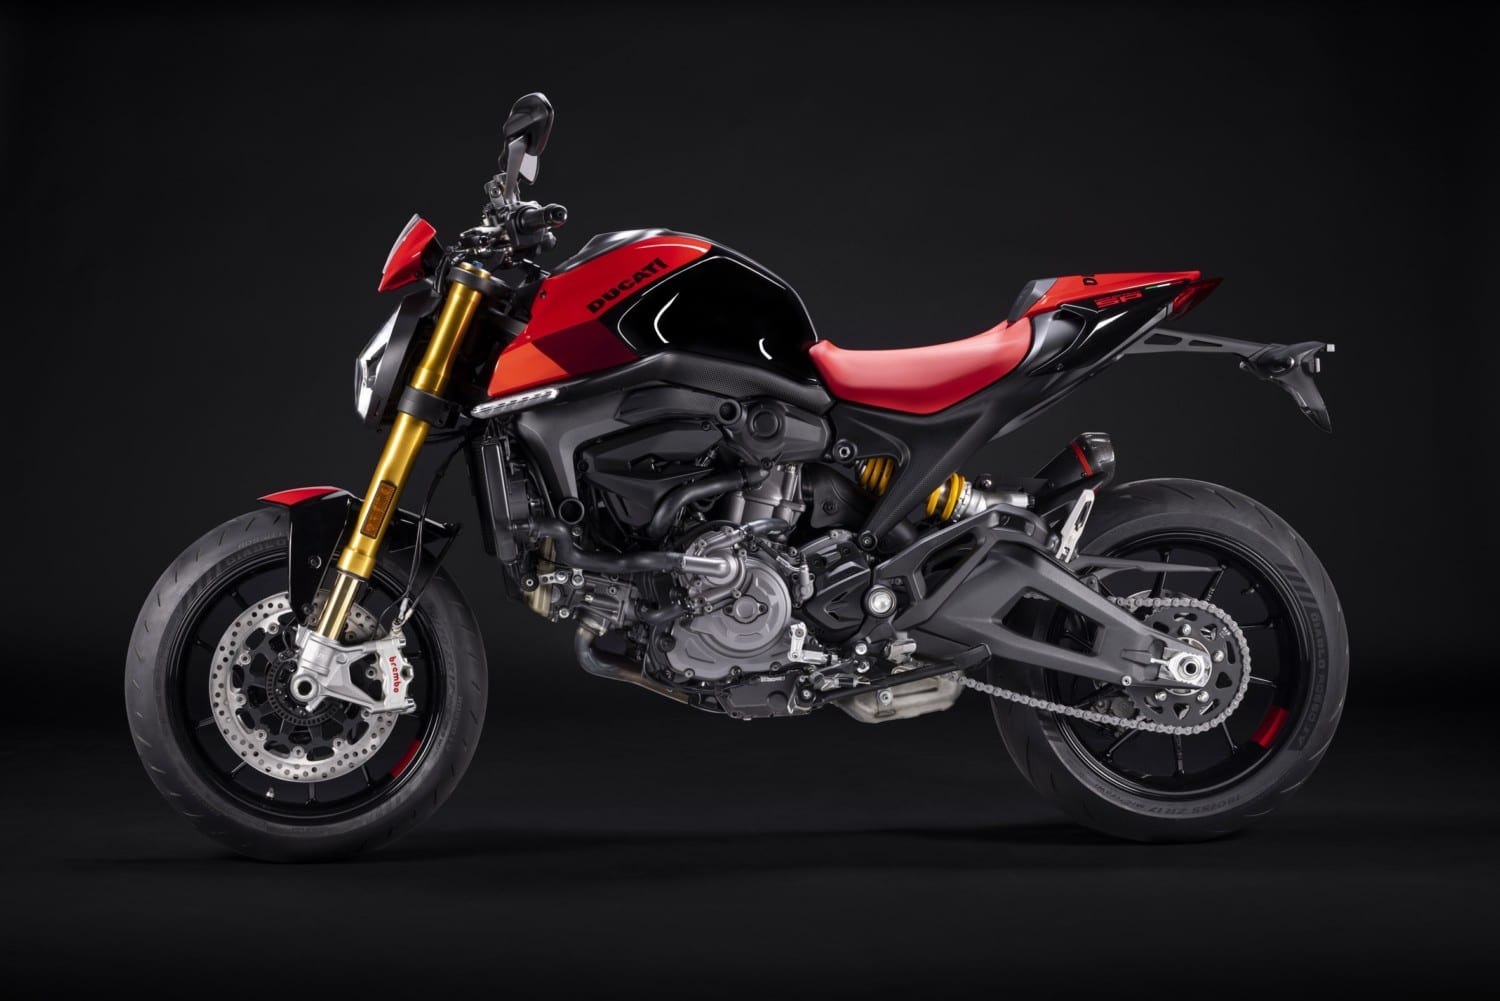 Skarpere end nogensinde før: Ducatis nye Monster